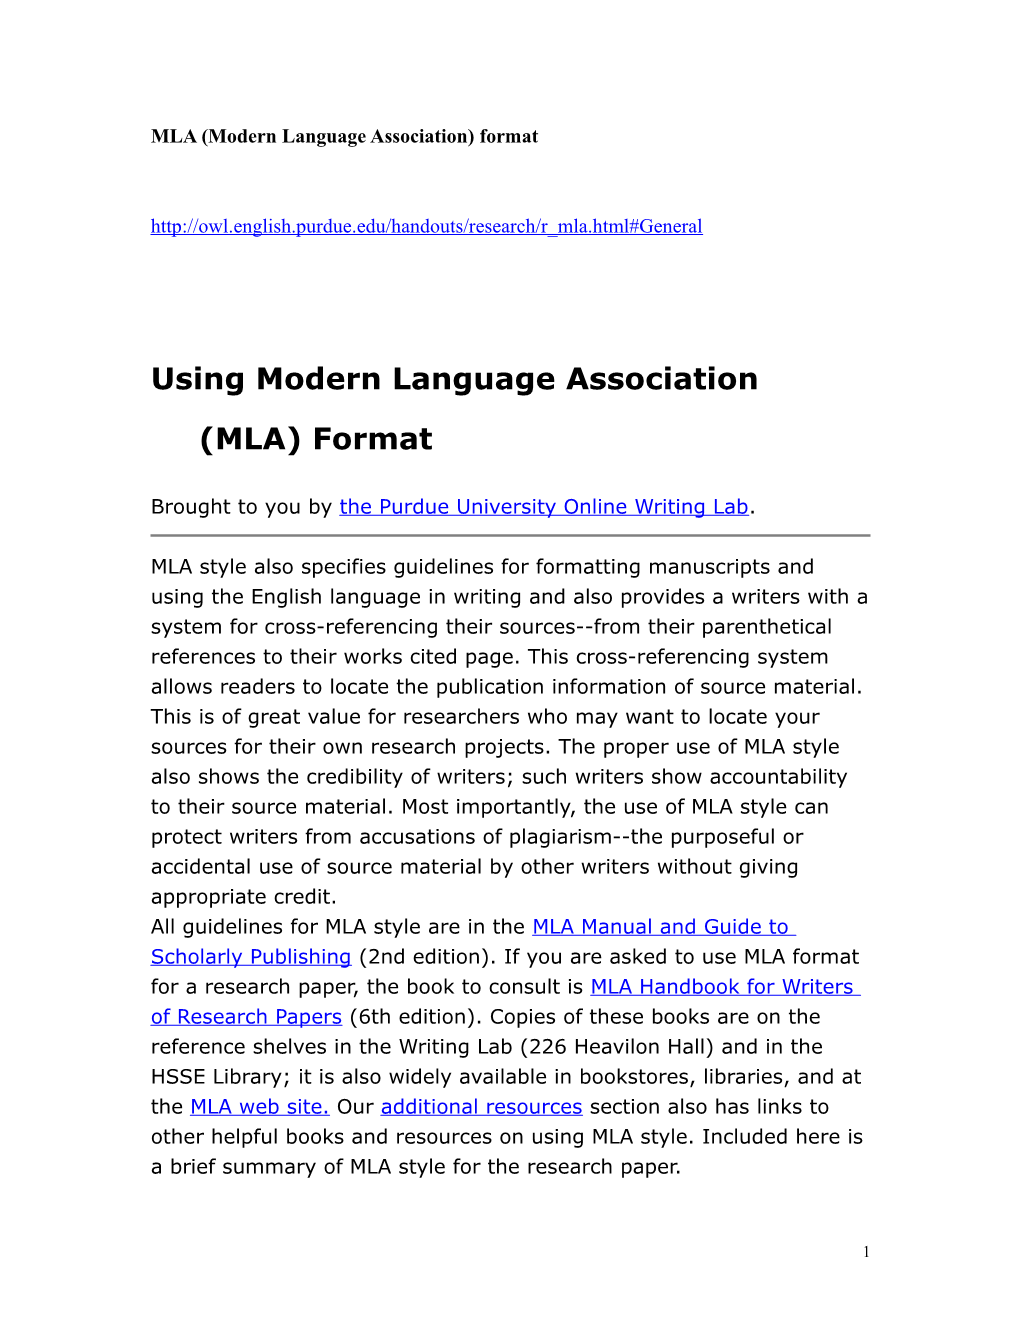 MLA (Modern Language Association) Format